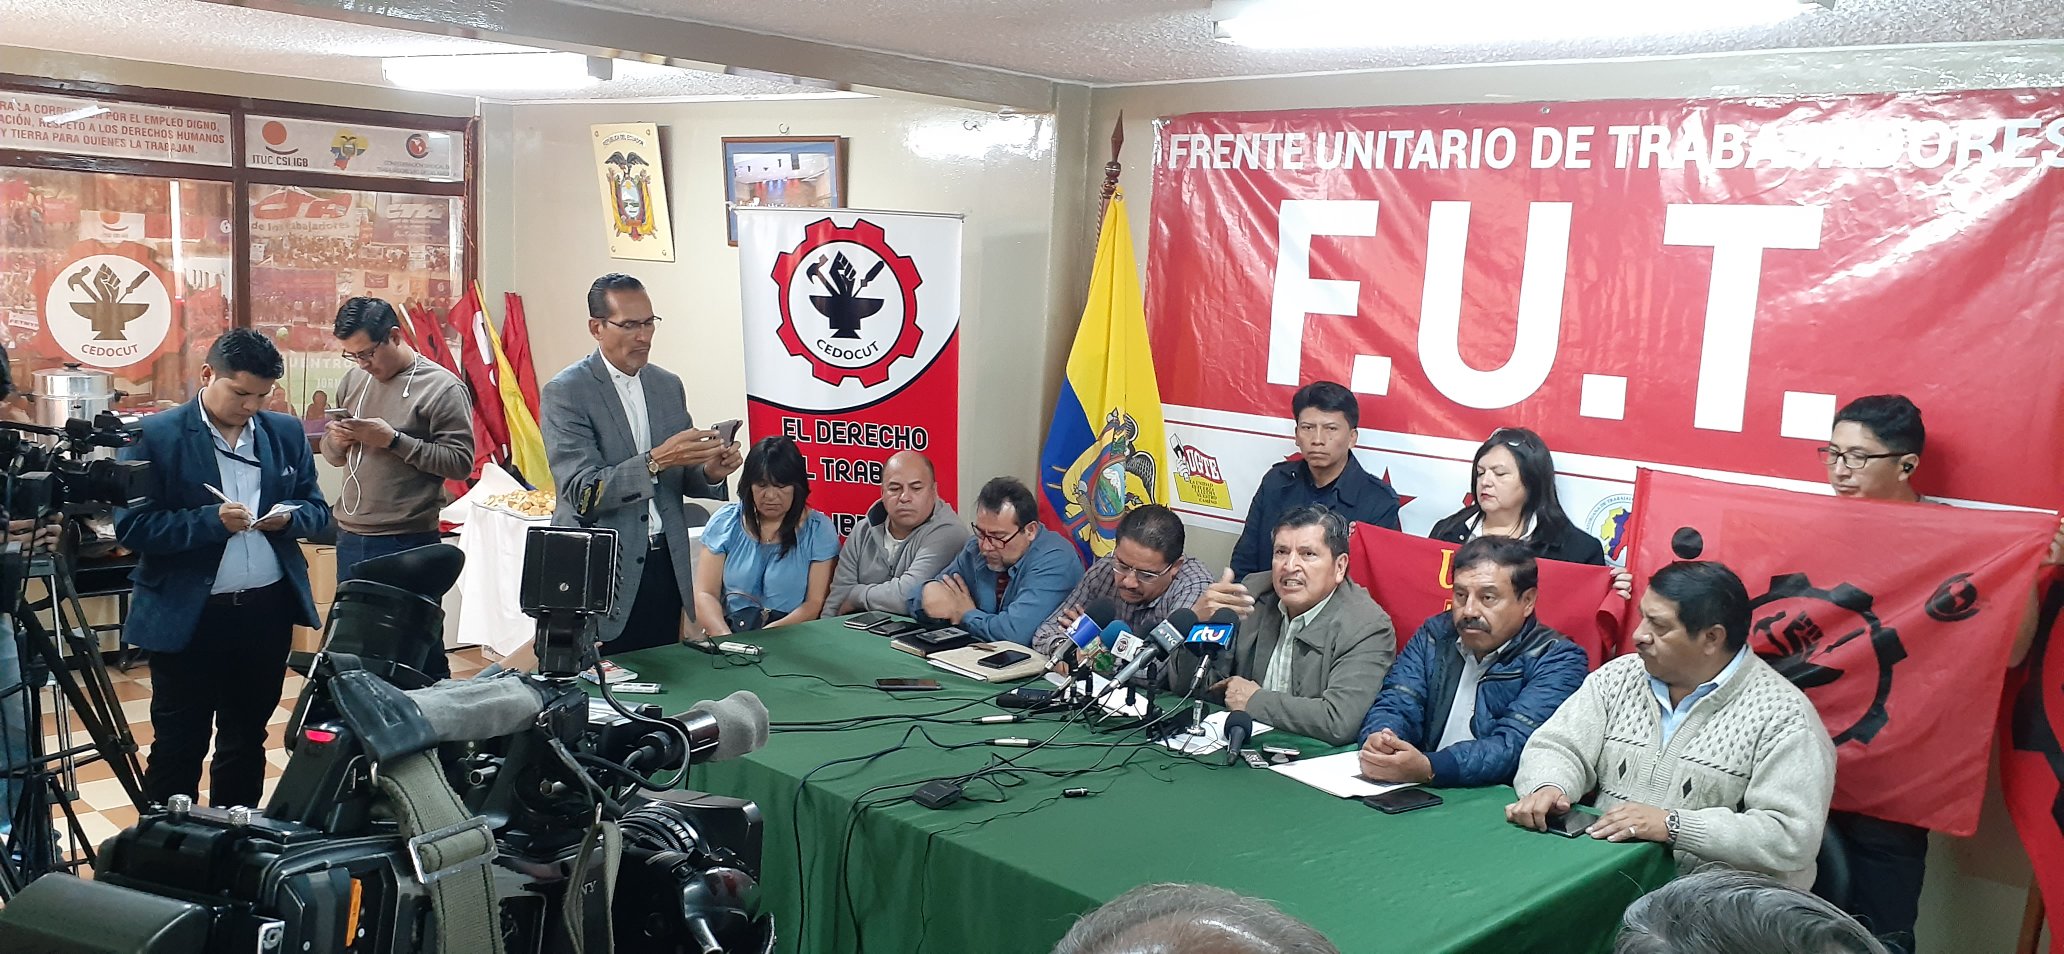 Los trabajadores ecuatorianos rechazaron el intento del Gobierno de Moreno de atribuir los problemas sociales del país a la protesta registrada en octubre pasado.